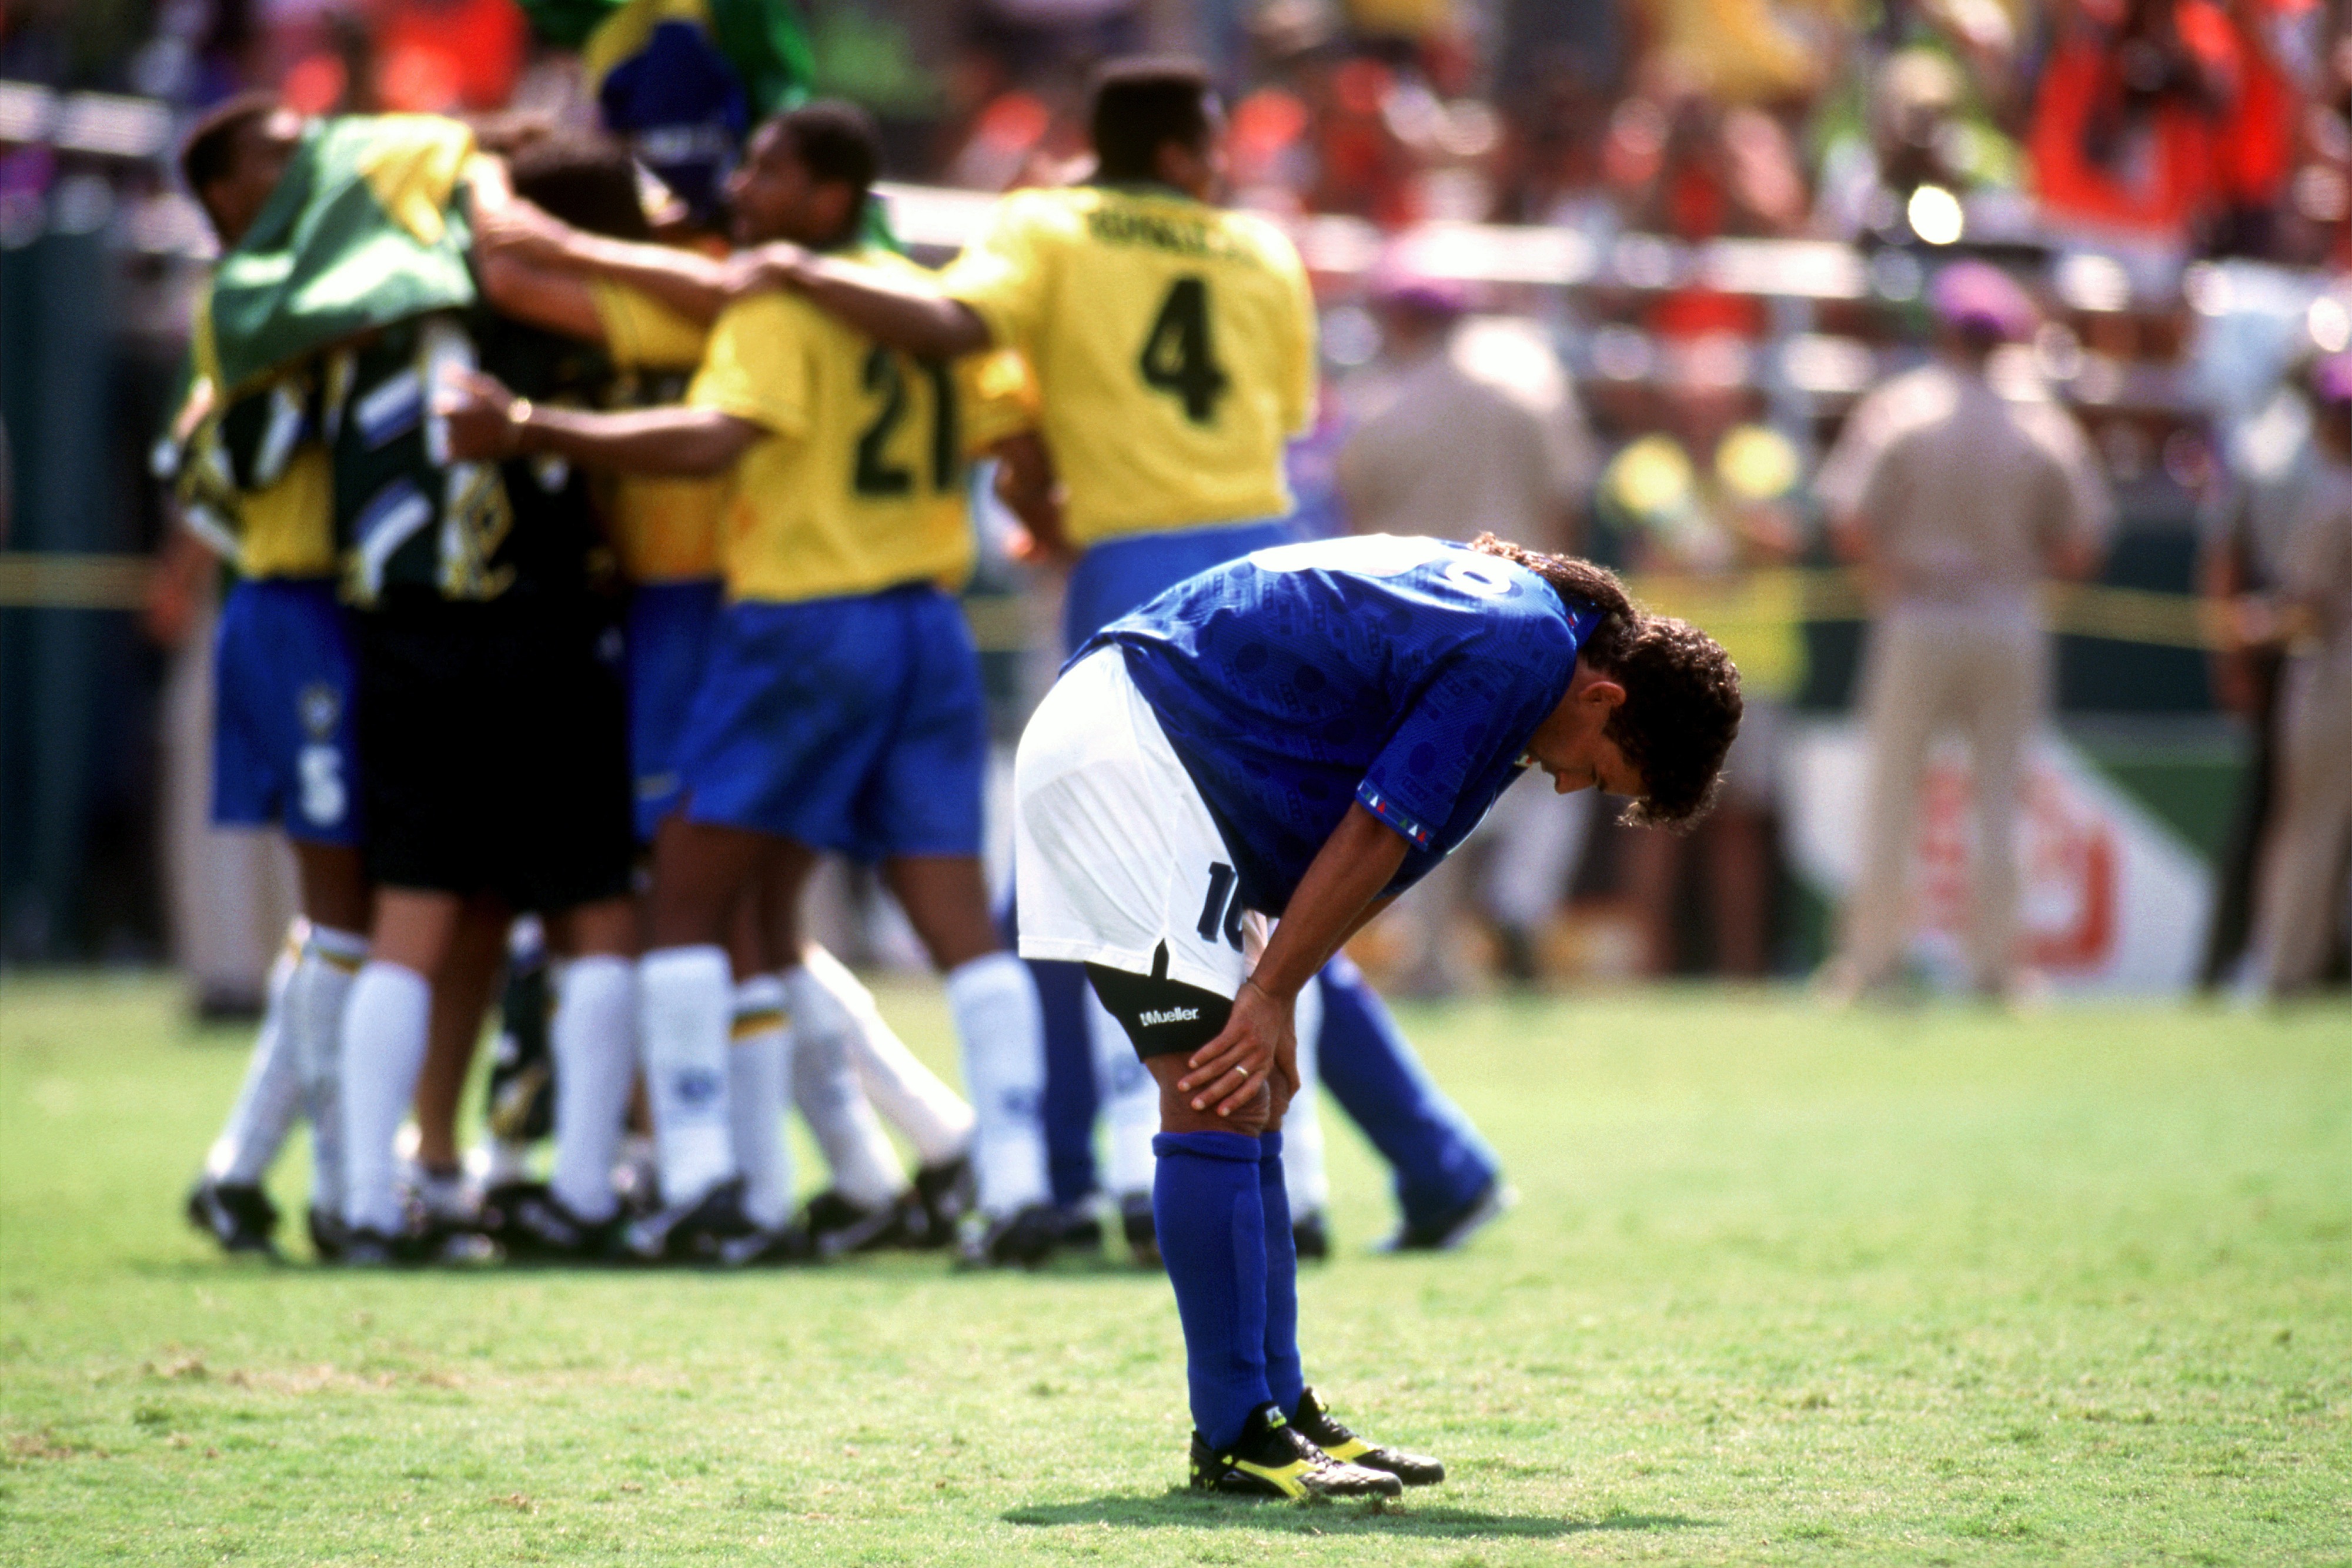 Baggio despair after defeat in World Cup Final in LA 1994